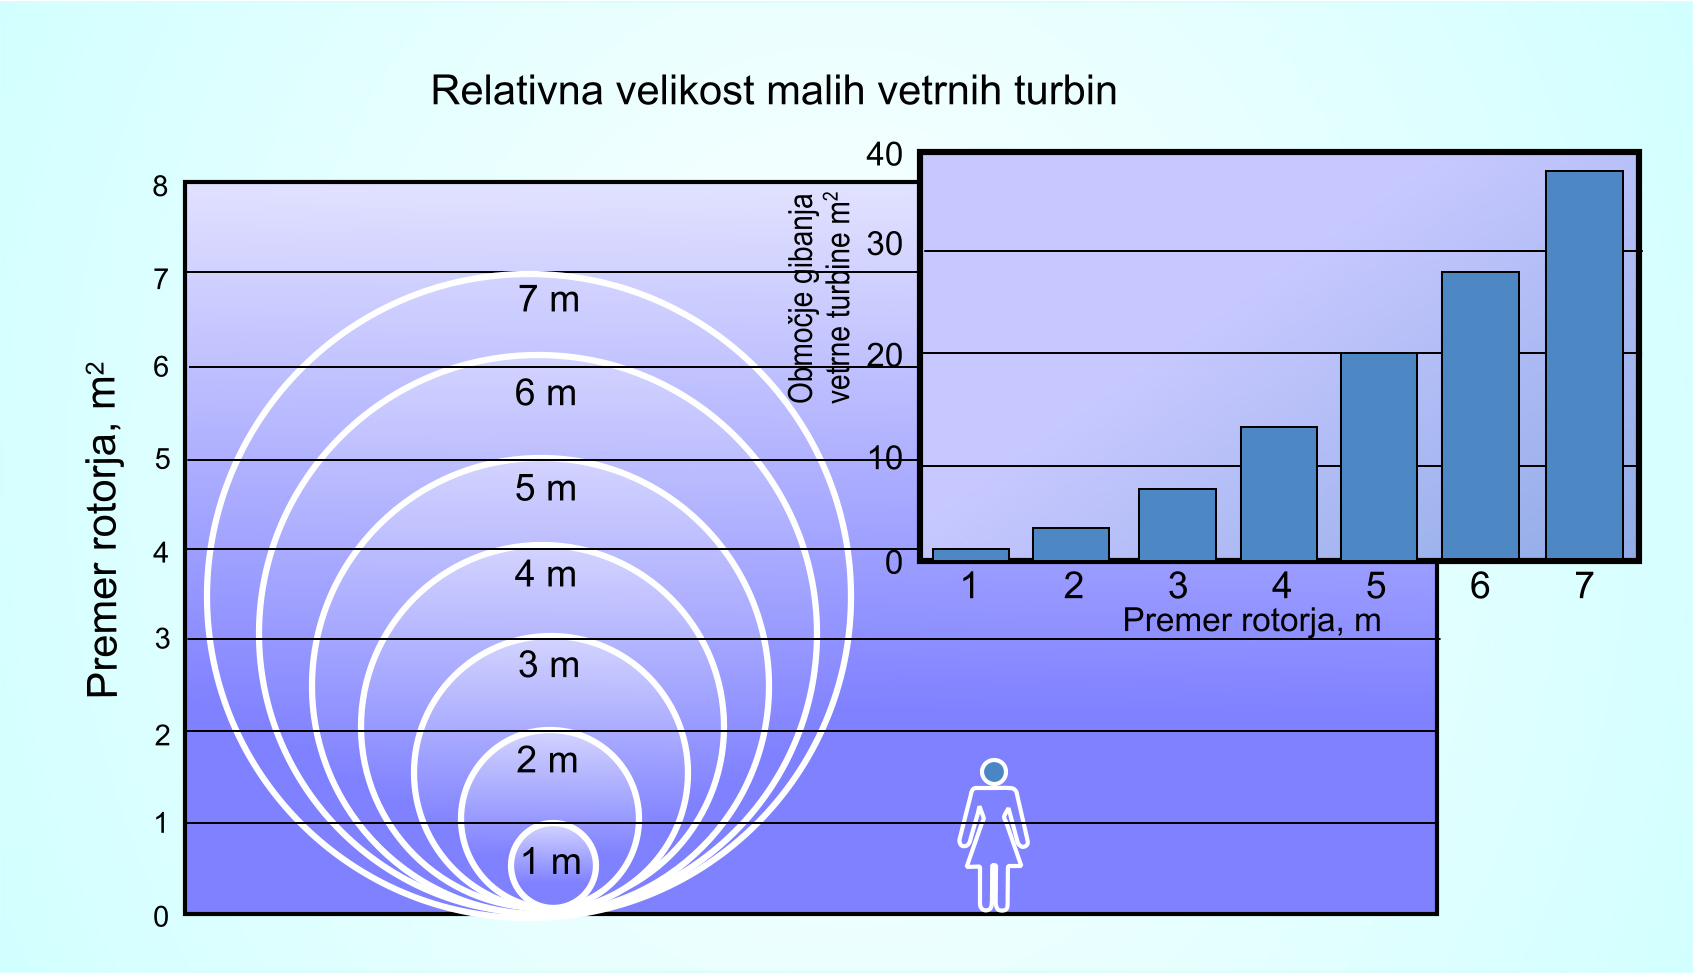 Relativna velikost malih vetrnih turbin